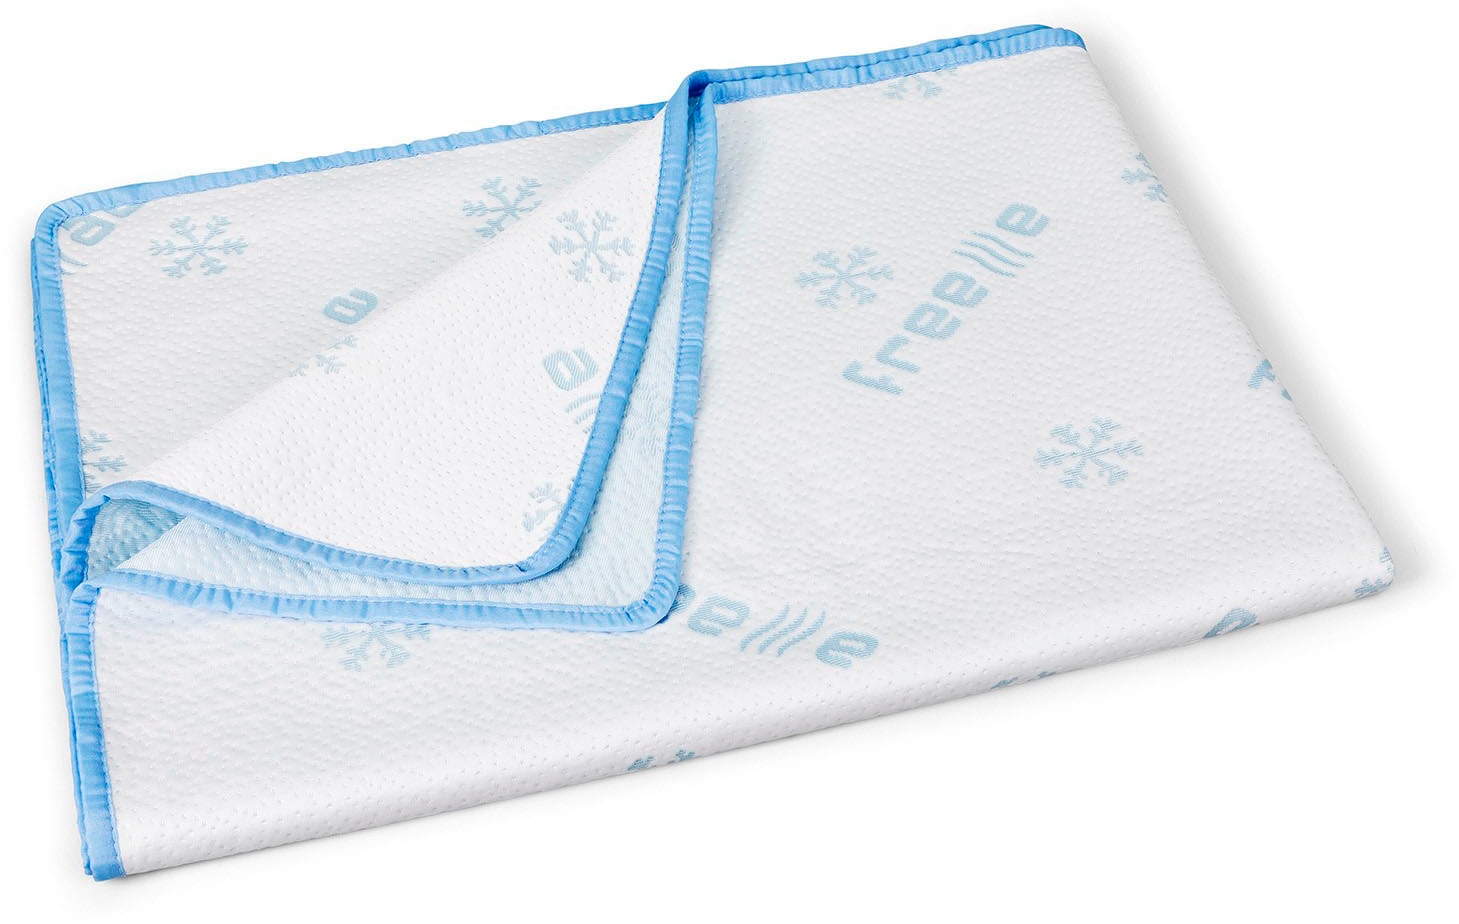 DI QUATTRO Sommerbettdecke »Freeze«, leicht, (1 St.), kühlende Bettdecke, 135x200 cm, ideal für die heißen Sommermonate